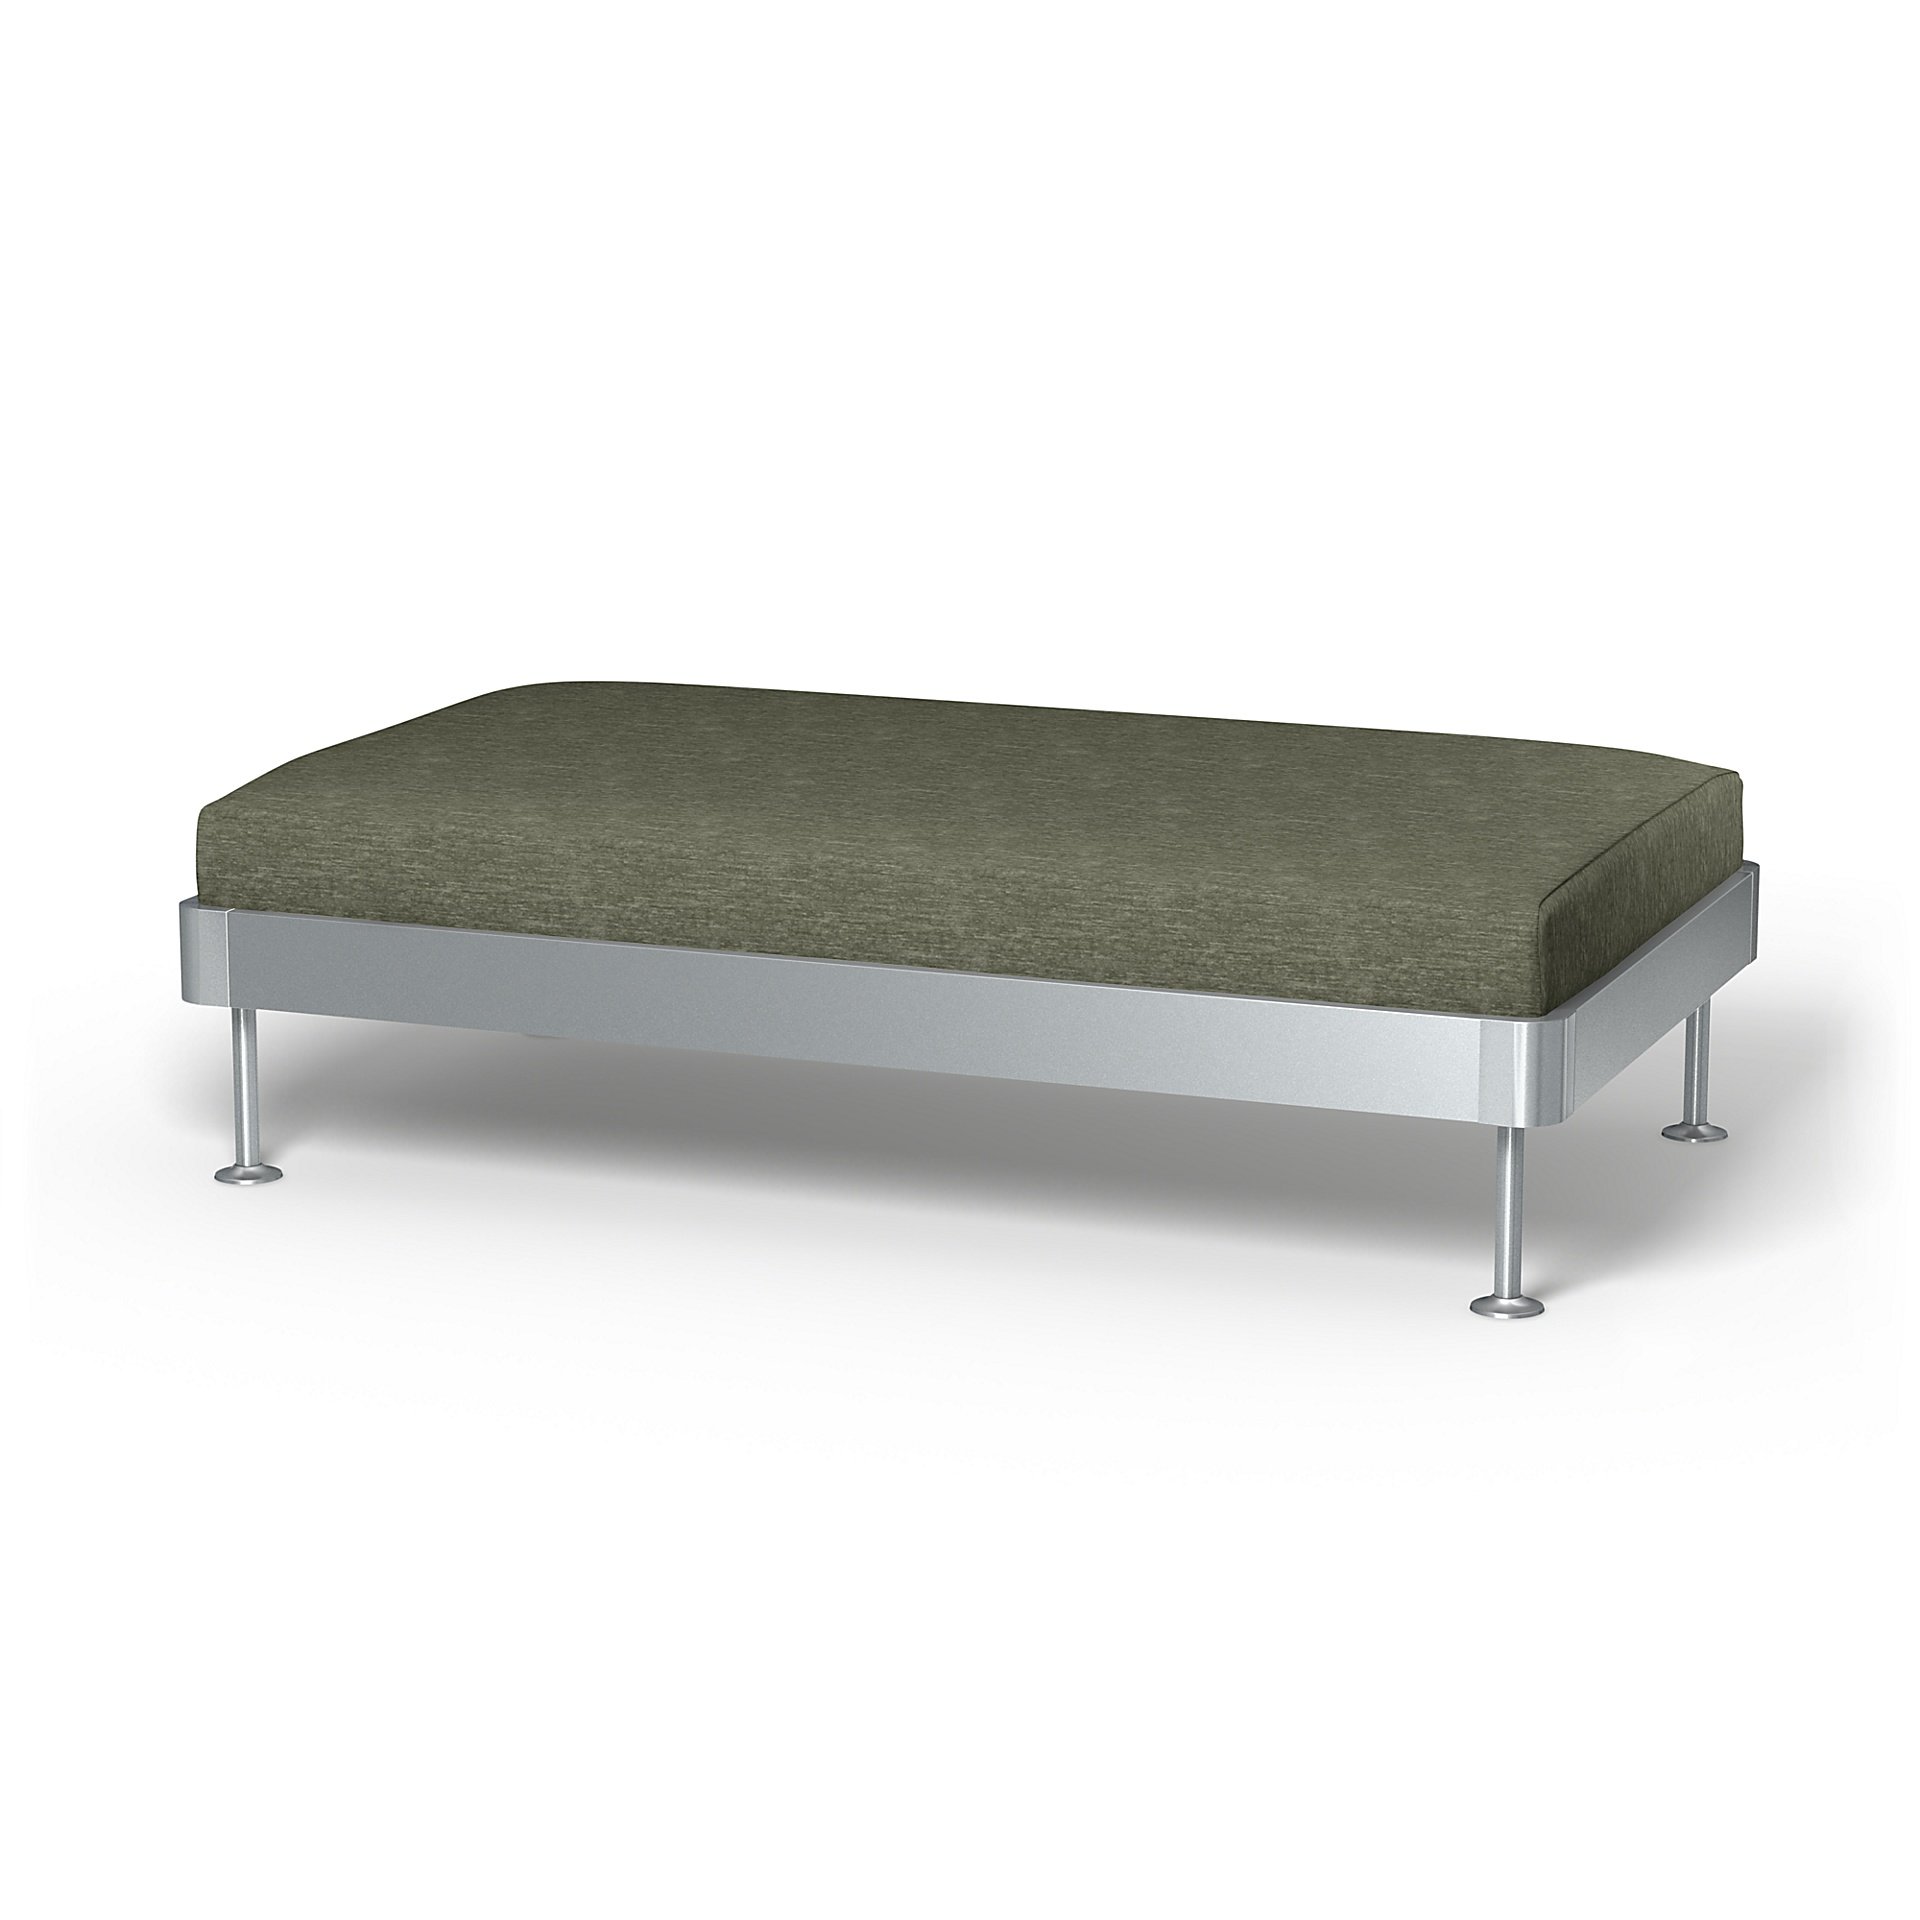 IKEA - Delaktig 2 Seat Platform Cover, Green Grey, Velvet - Bemz